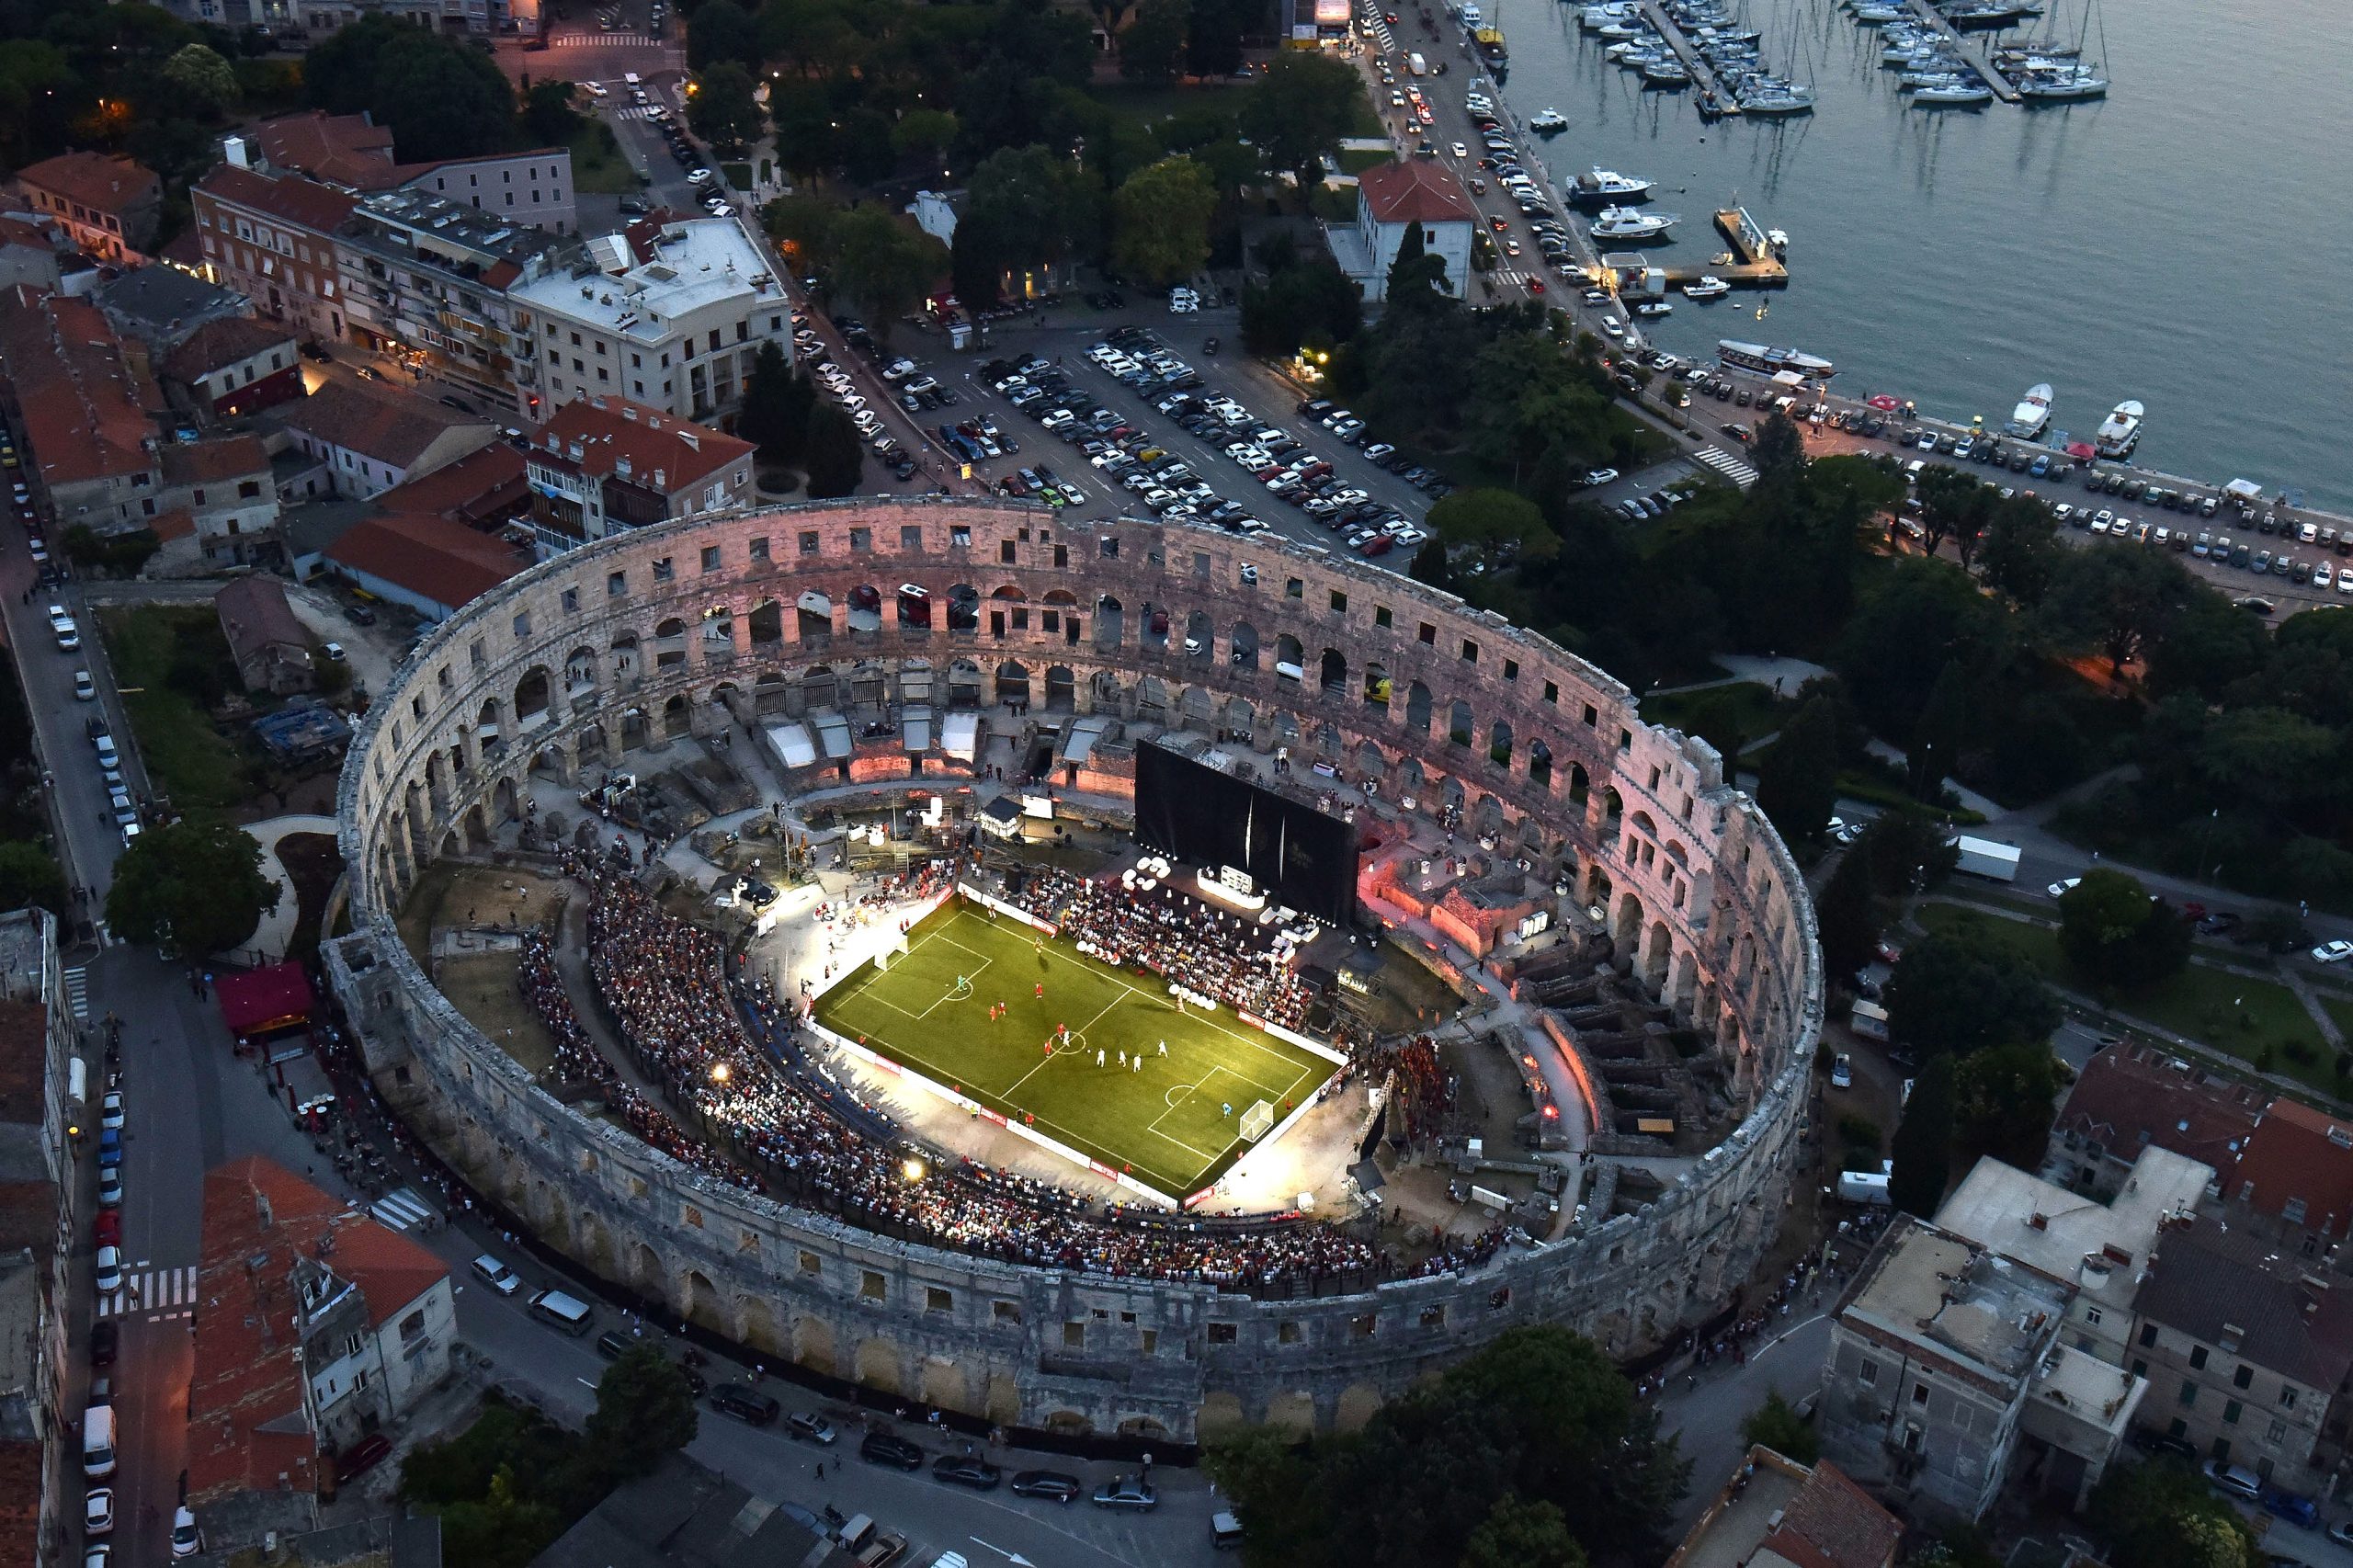 08.07.2019., Pula - Po prvi put u povijesti rimski amfiteatar postao je nogometno igraliste na kojemu su snage odmjerile legende hrvatske nogometne reprezentacije i Bayer Muenchena. Photo: Dusko Marusic/PIXSELL